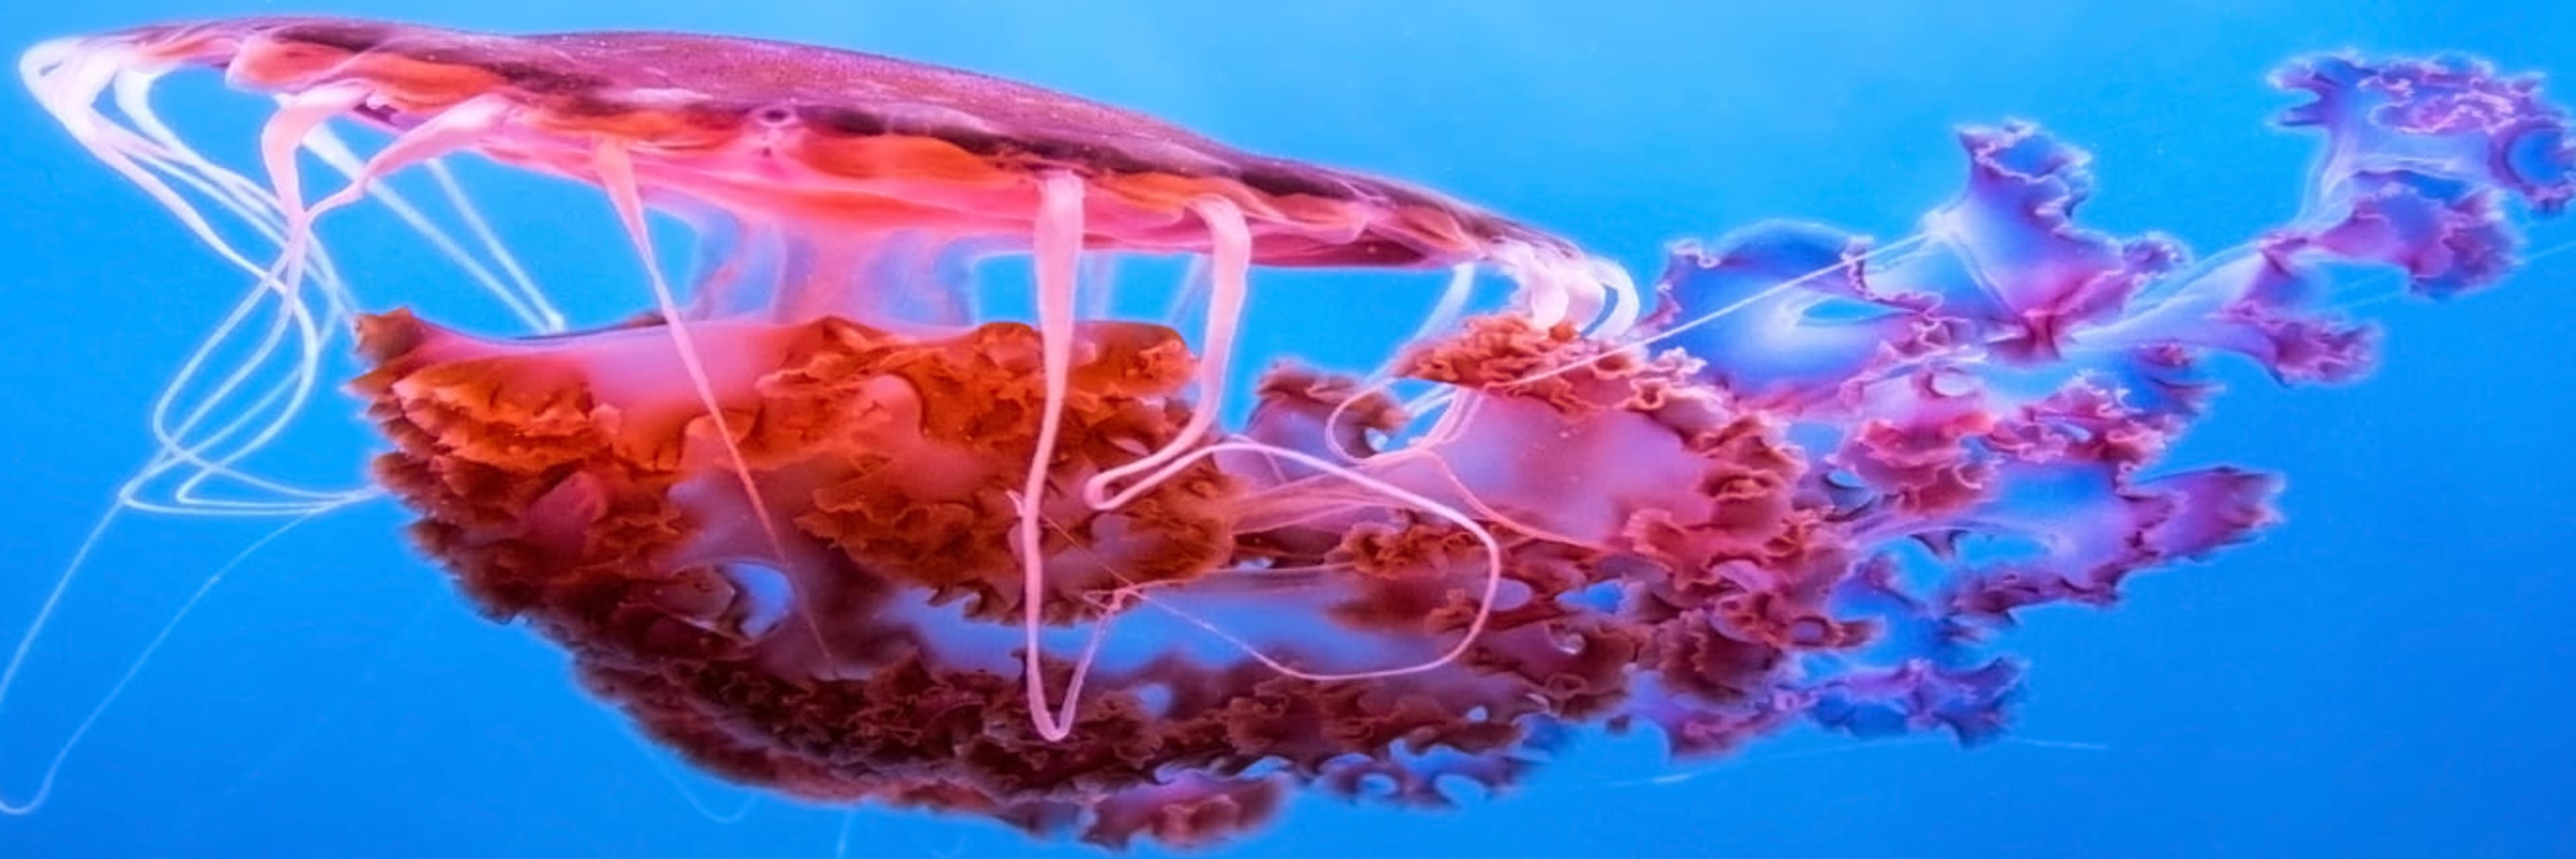 Jellyfish hero image